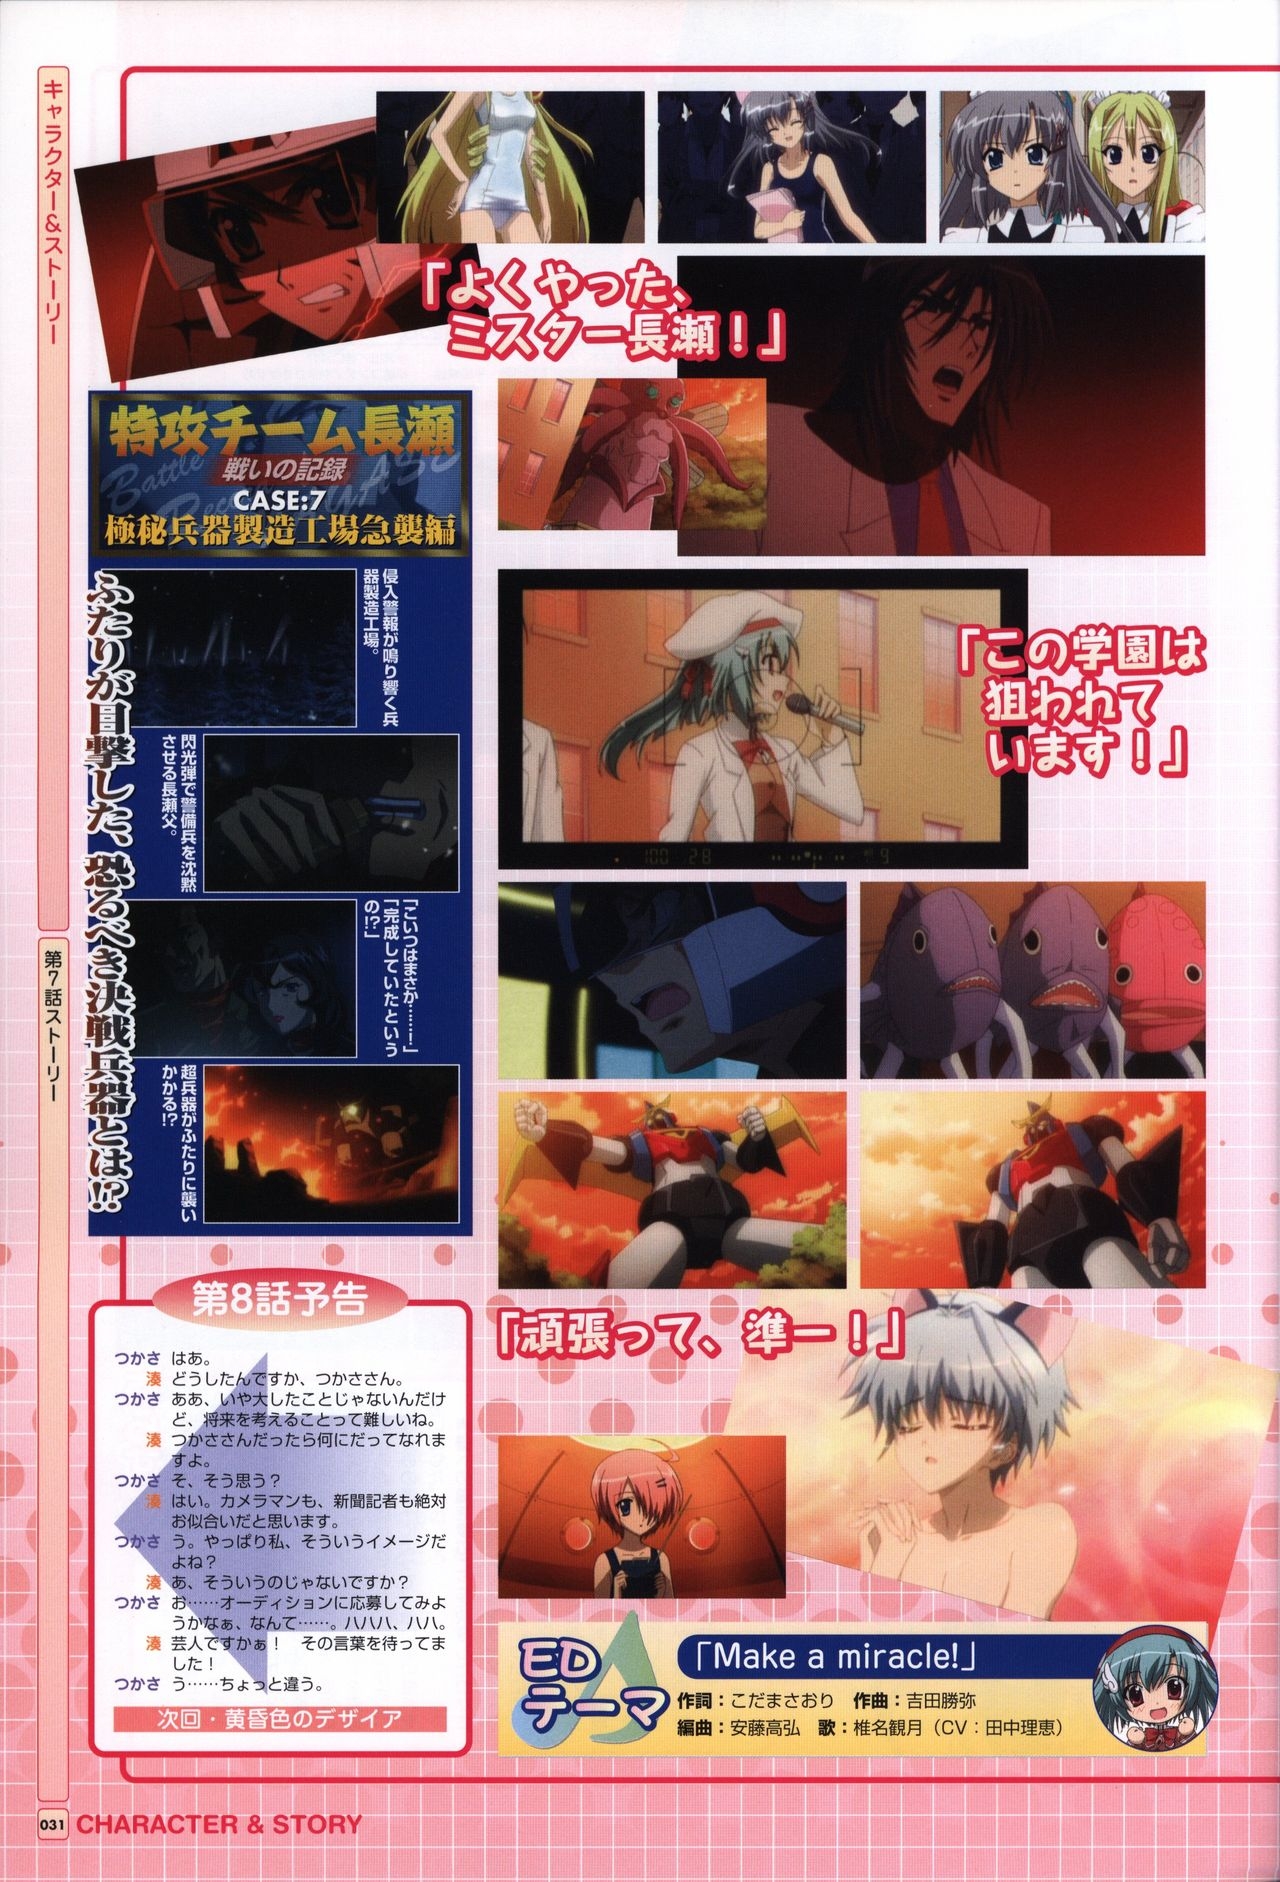 TV ANIME Akaneiro ni Somaru Saka Visual Guide Book 31